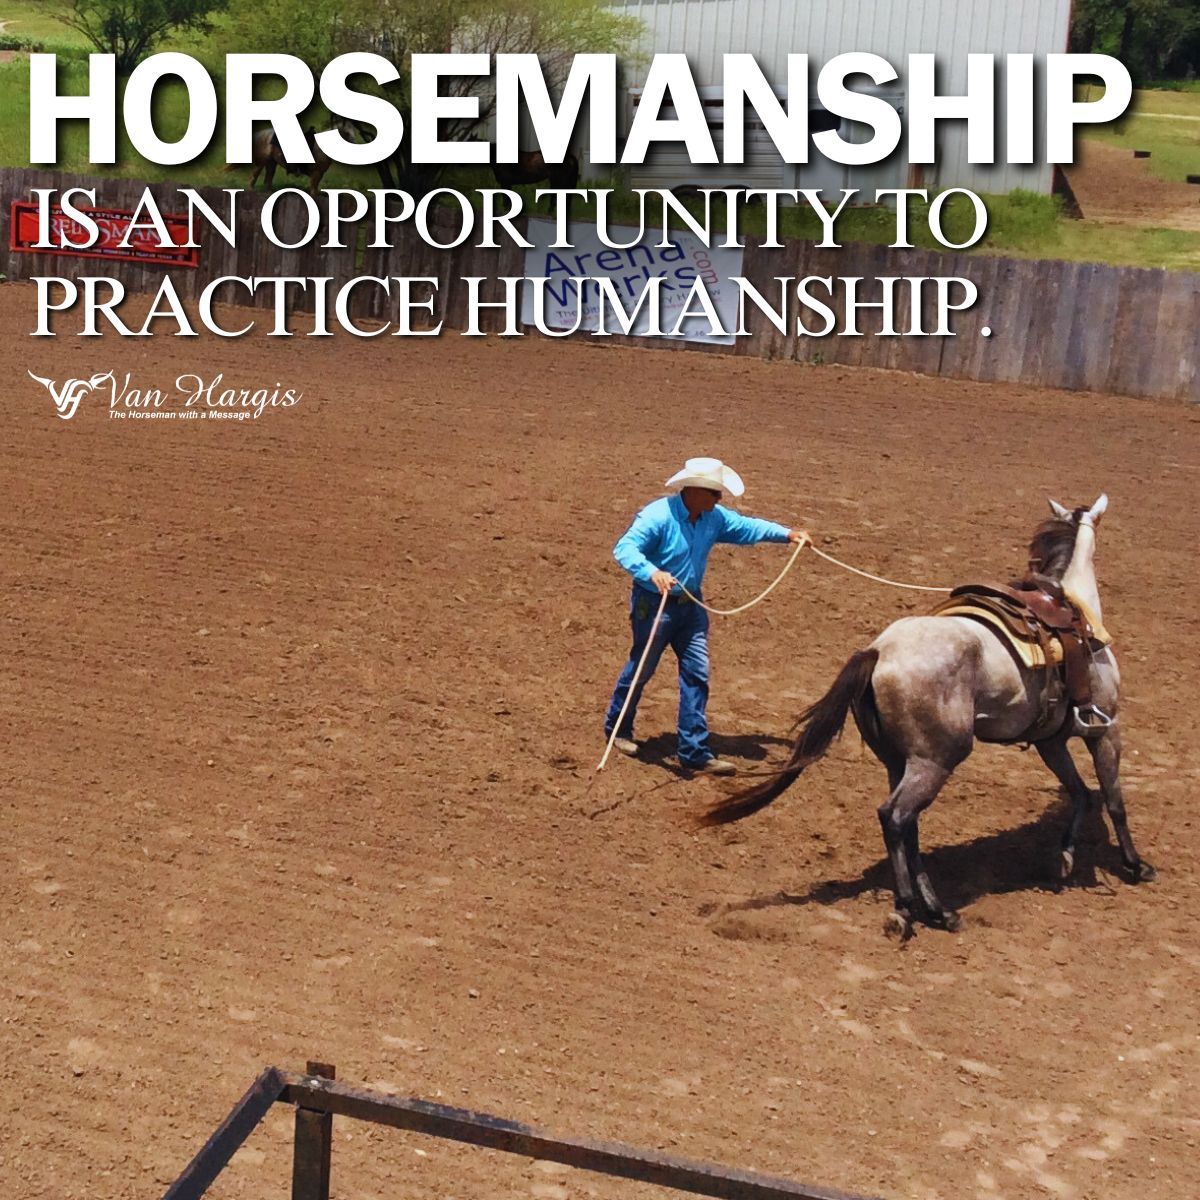 #VanHargisHorsemanship #Horsemanship